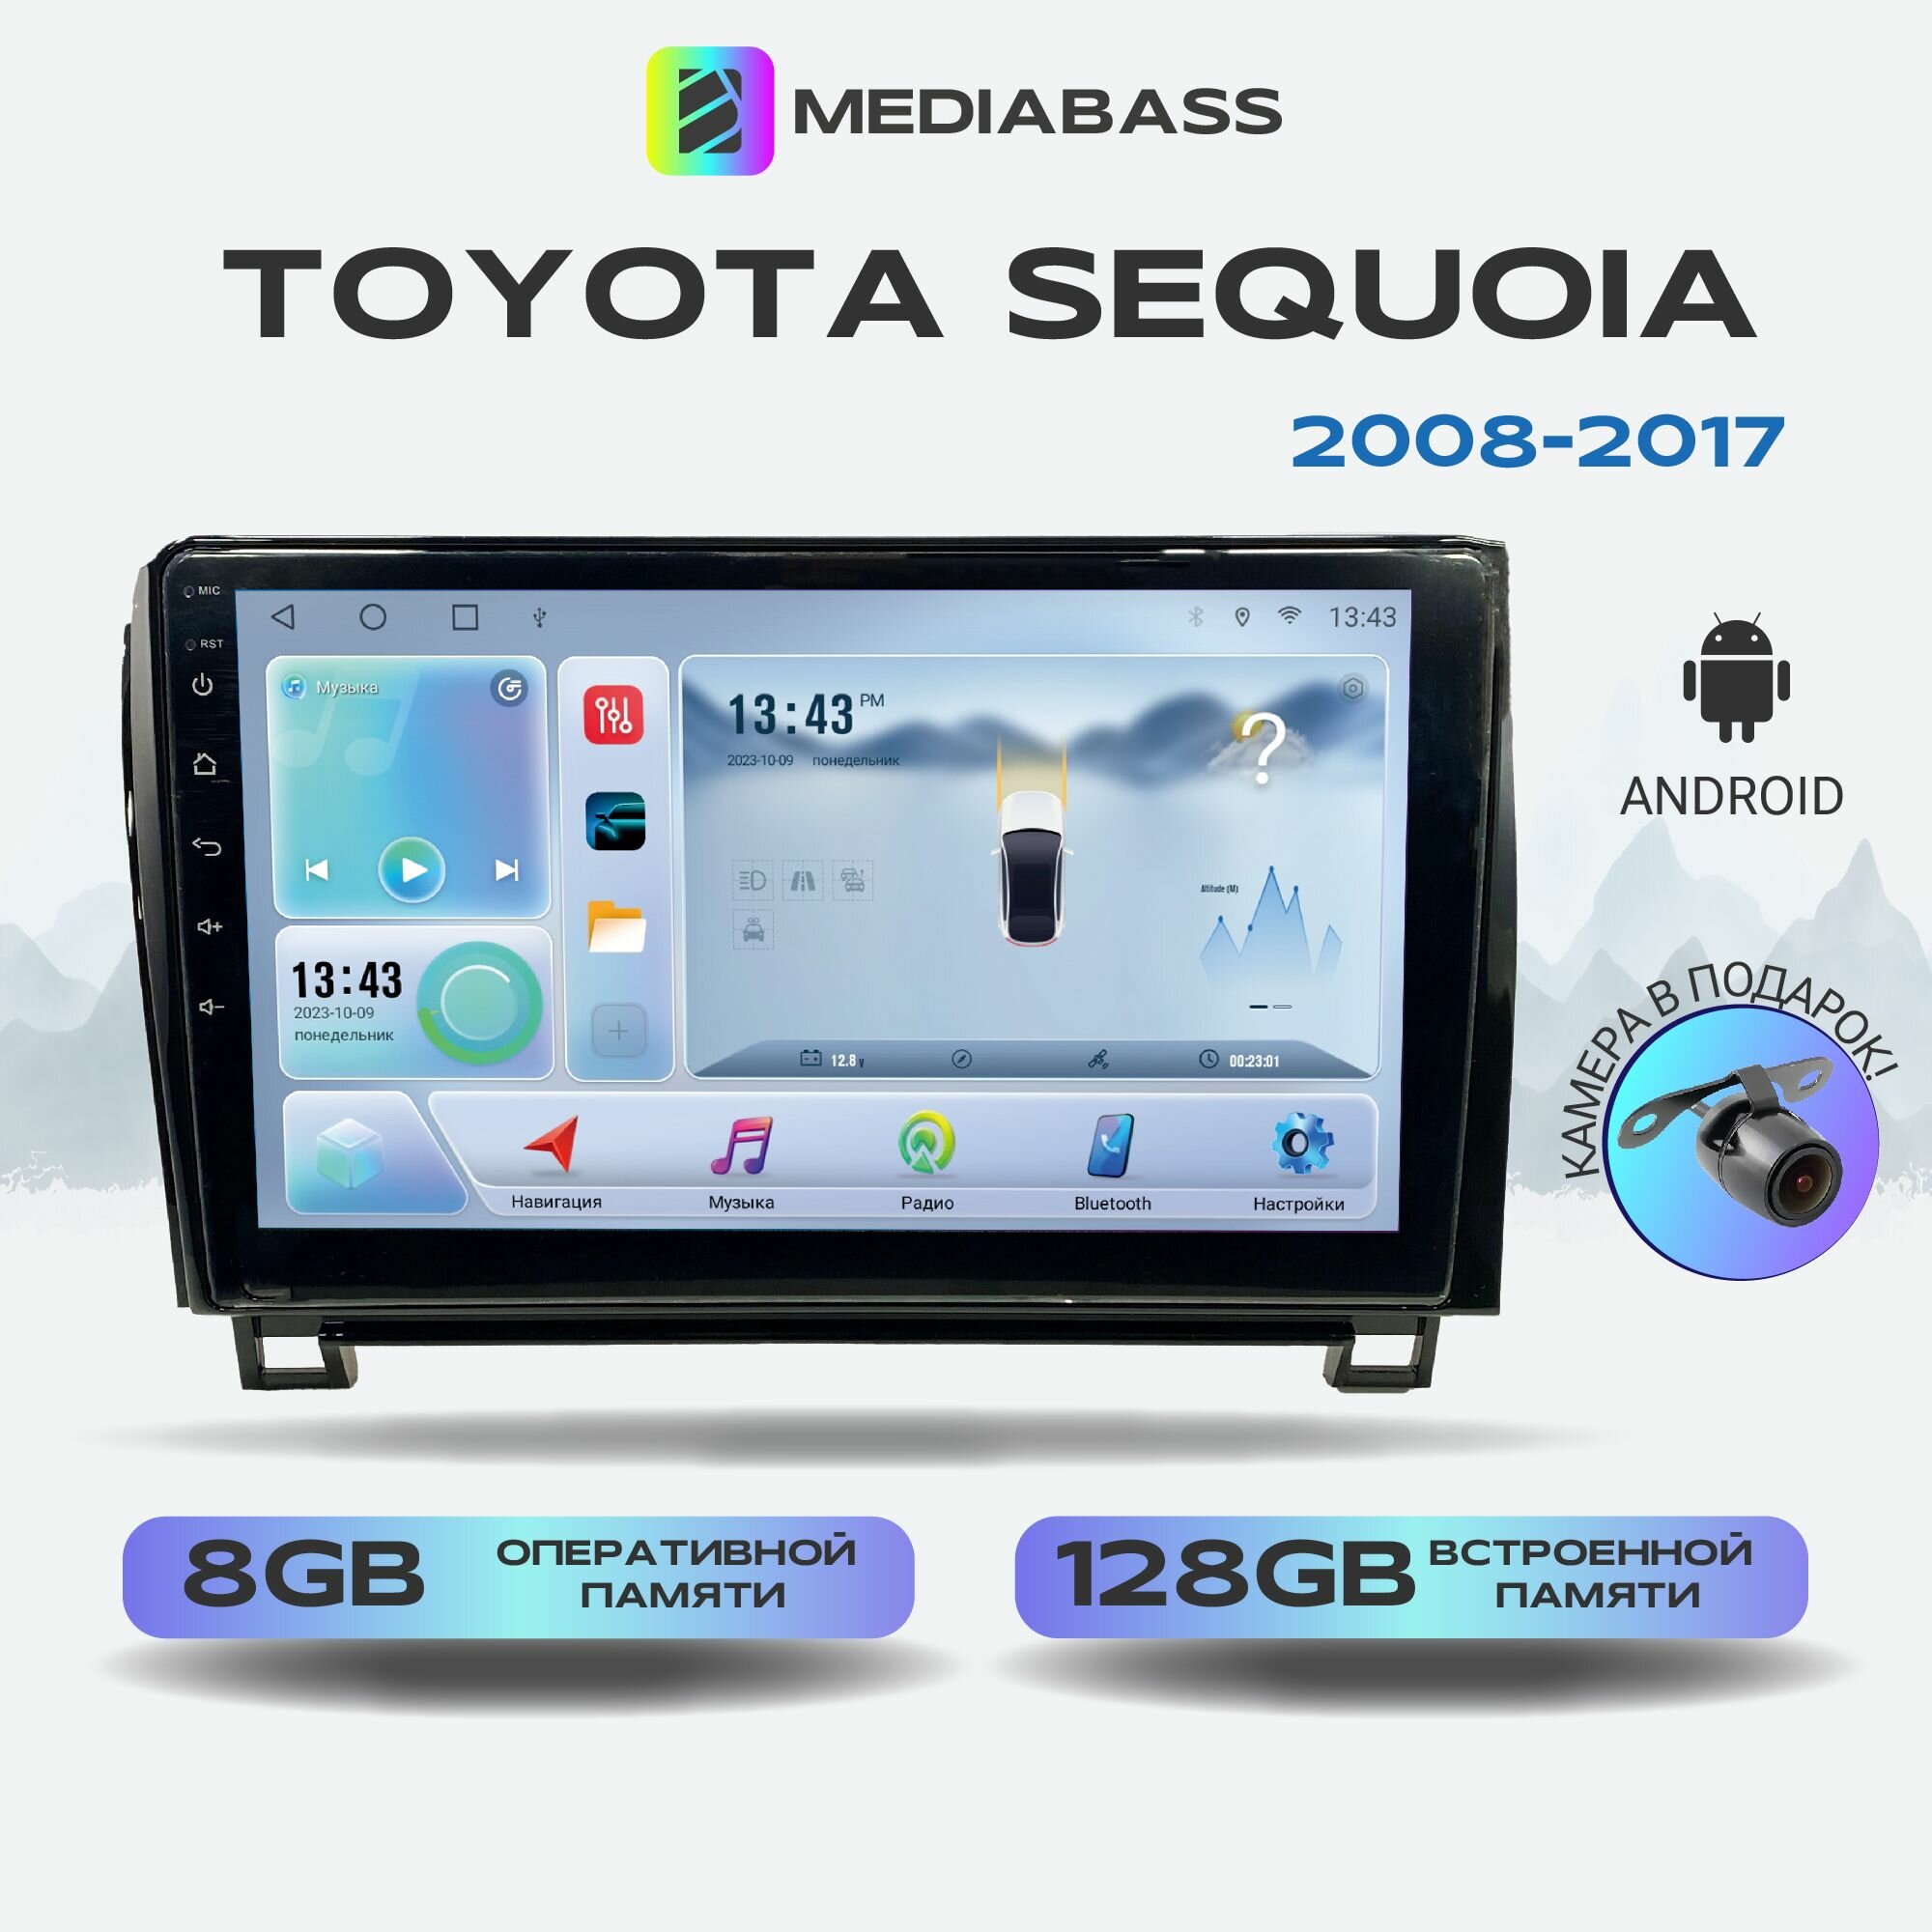 Автомагнитола Mediabass Toyota Sequoia 2008-2017, Android 12, 8/128ГБ, 8-ядерный процессор, DSP, 4G модем, голосовое управление, чип-усилитель TDA7851, 4G LTE / Тойота Секвойя